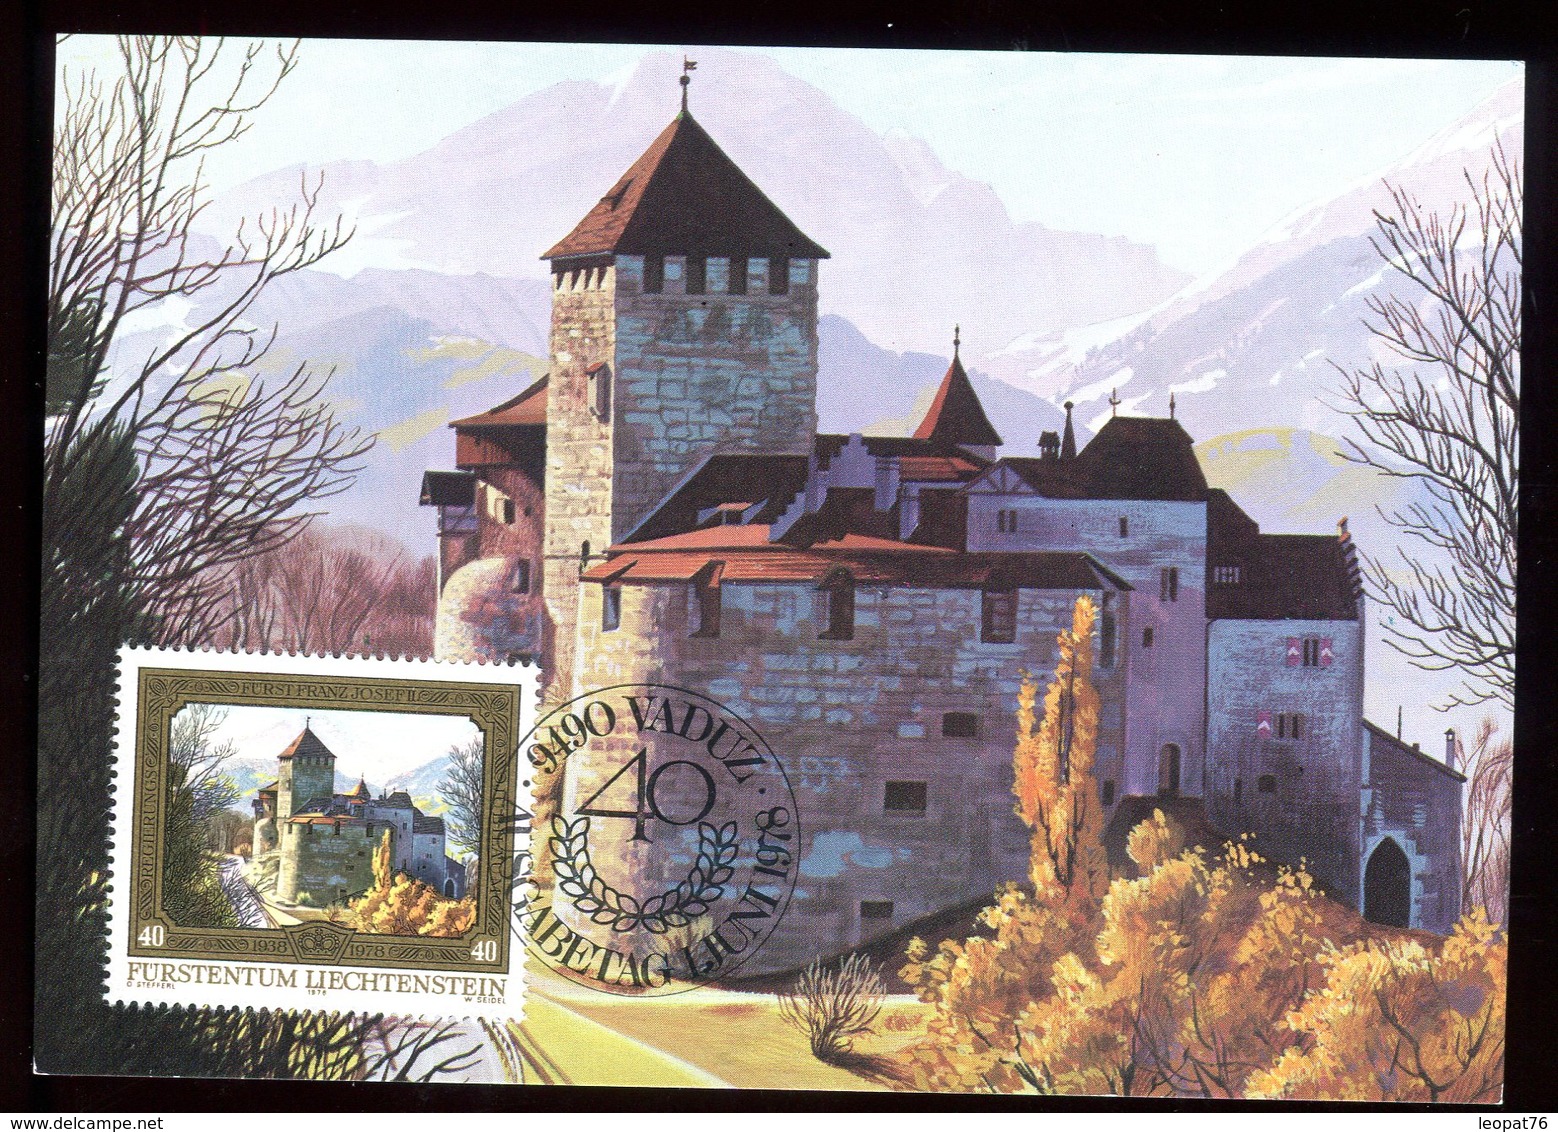 Liechtenstein - Carte Maximum 1978 - Château De Vaduz - N30 - Cartoline Maximum